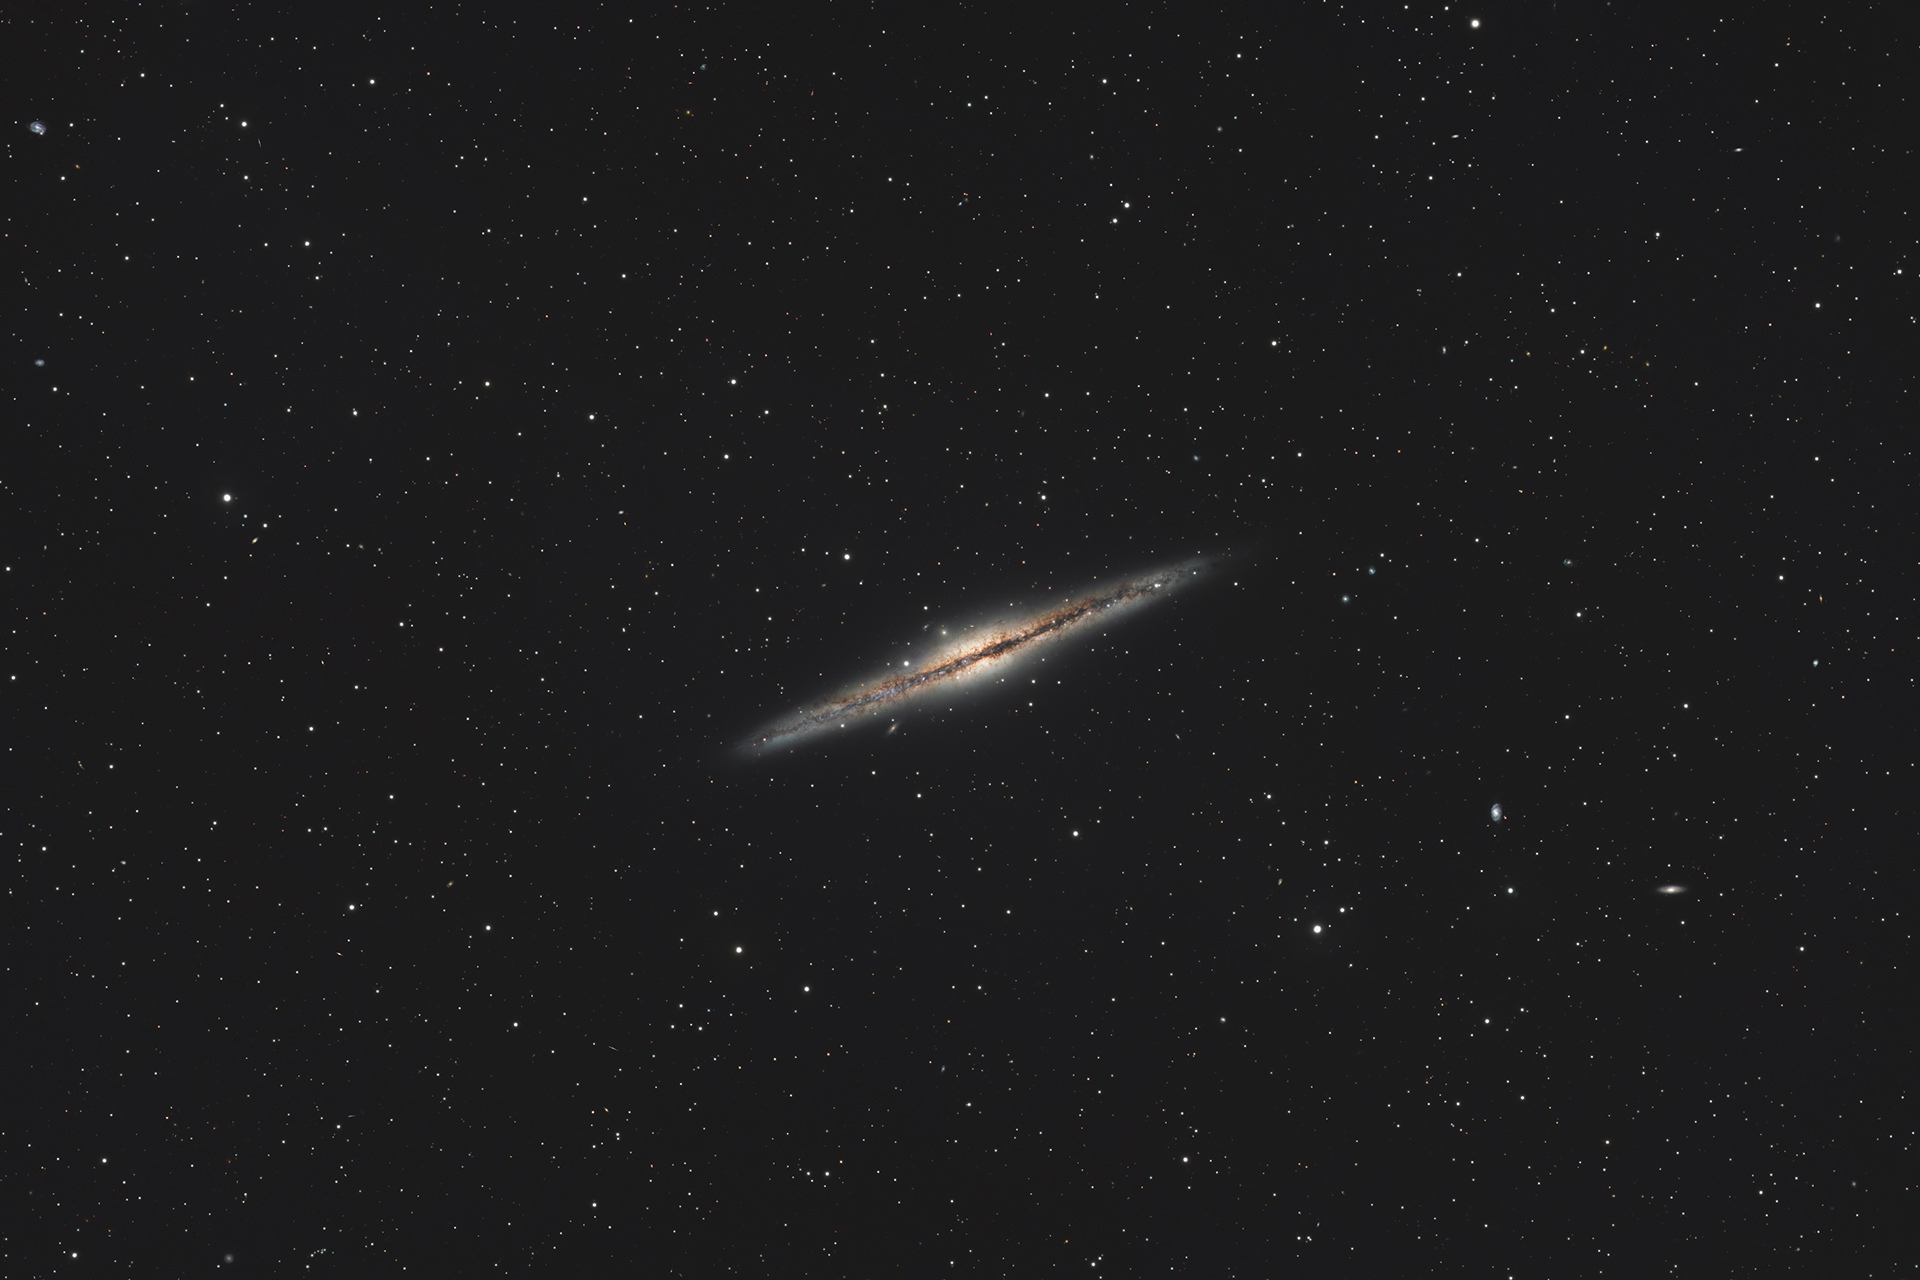 NGC891_2023v5_3x2_1280.jpg.16cb6772432e2eef73981a90b721dd7b.jpg